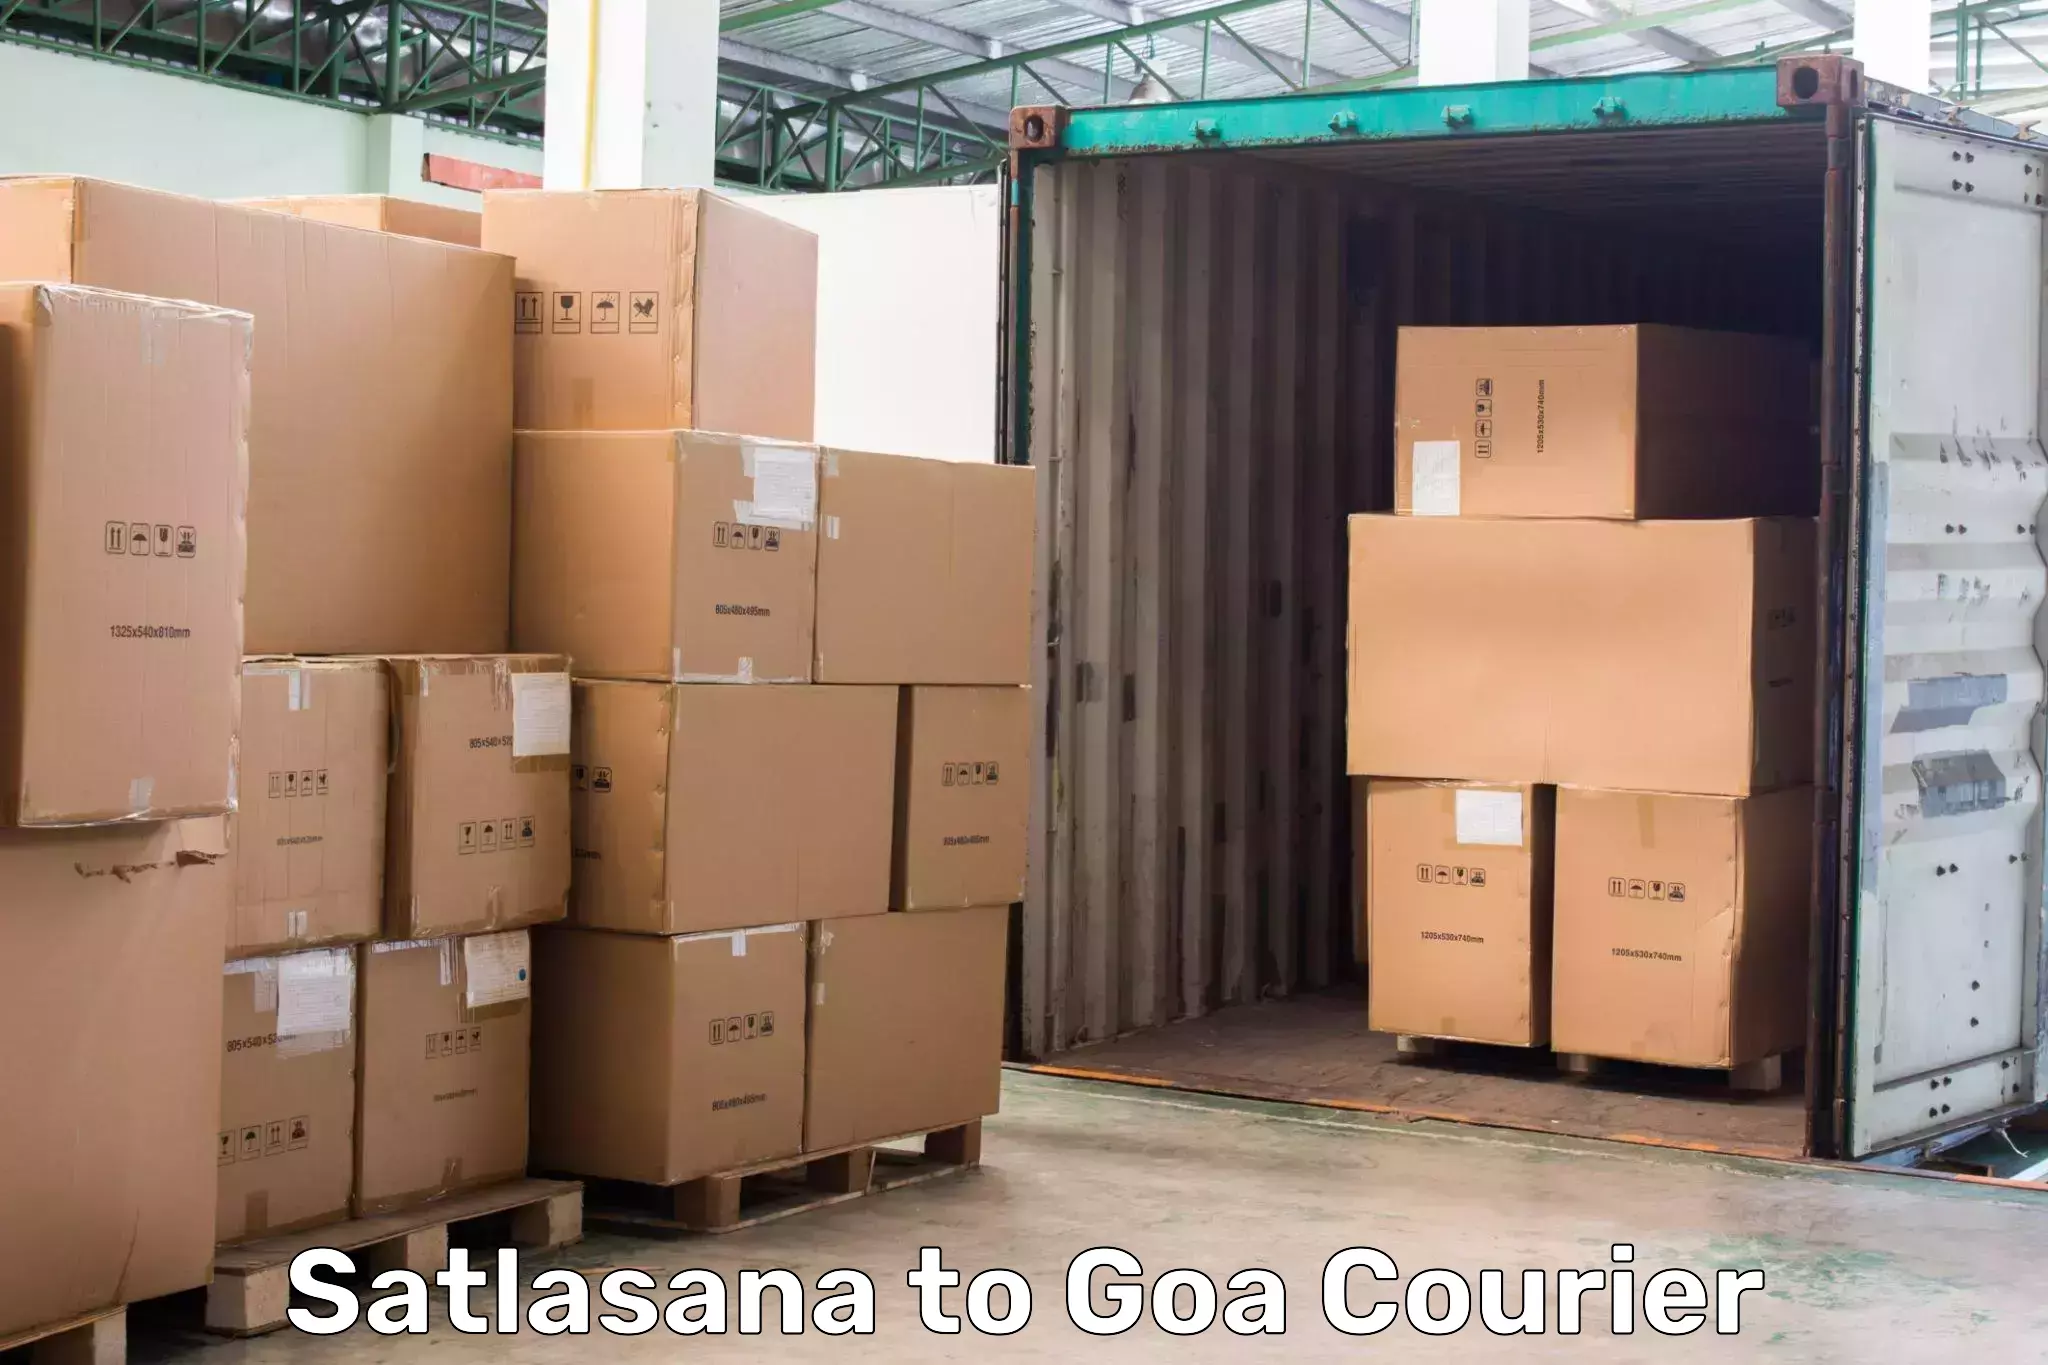 Local delivery service Satlasana to Goa